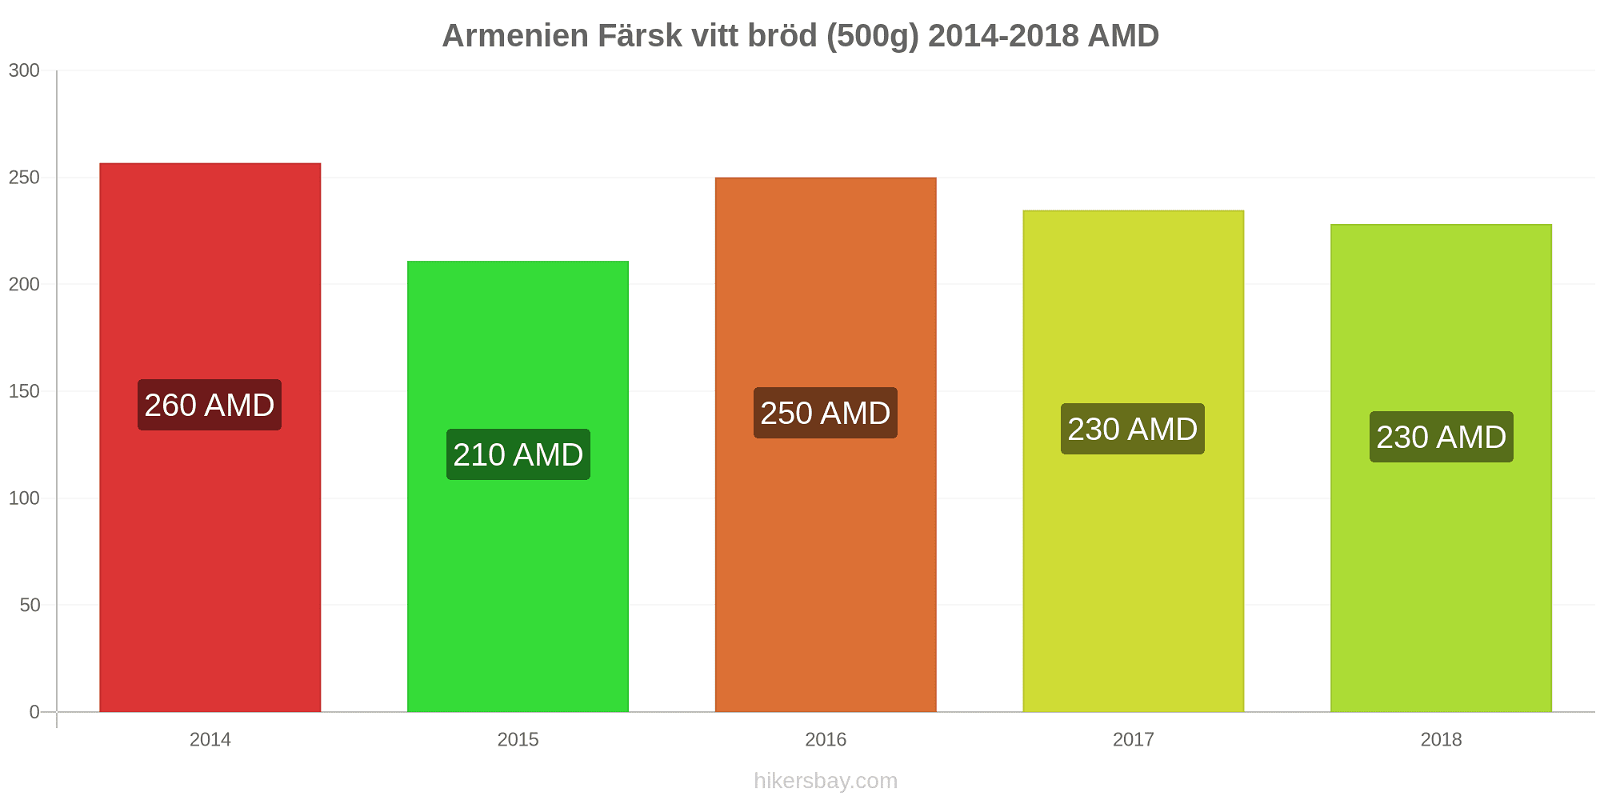 Armenien prisändringar Färsk vitt bröd (500g) hikersbay.com